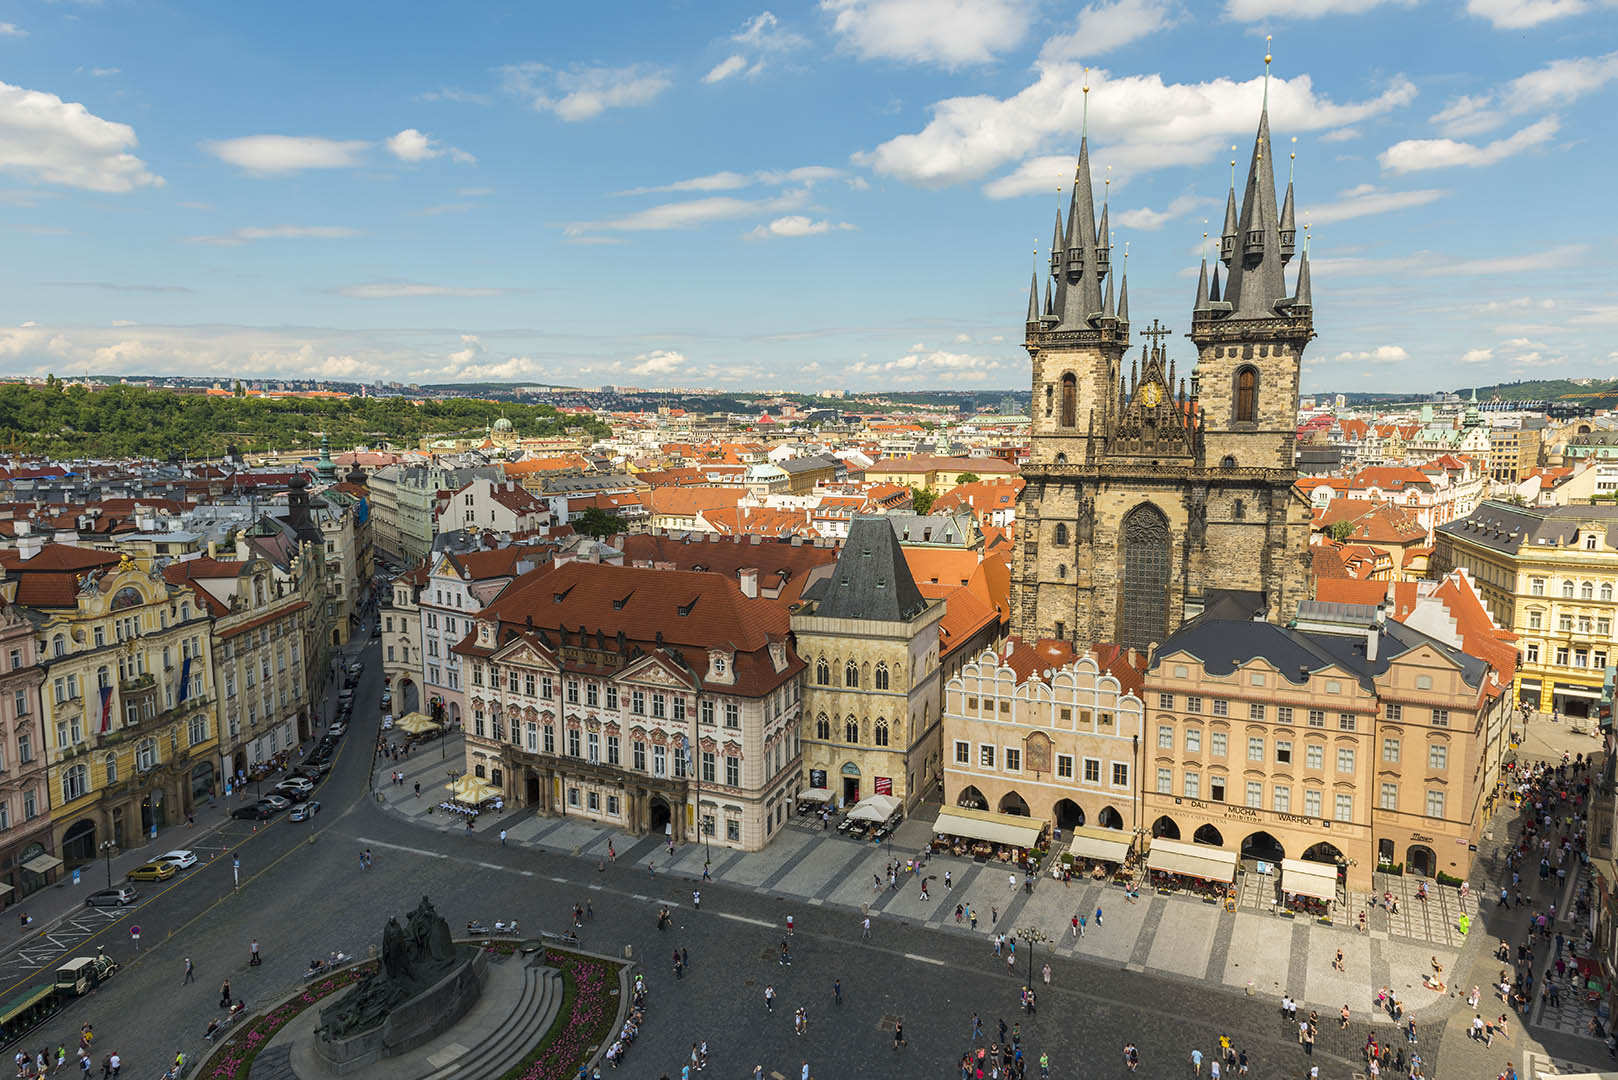 PRAGUE, CZECH REPUBLIC